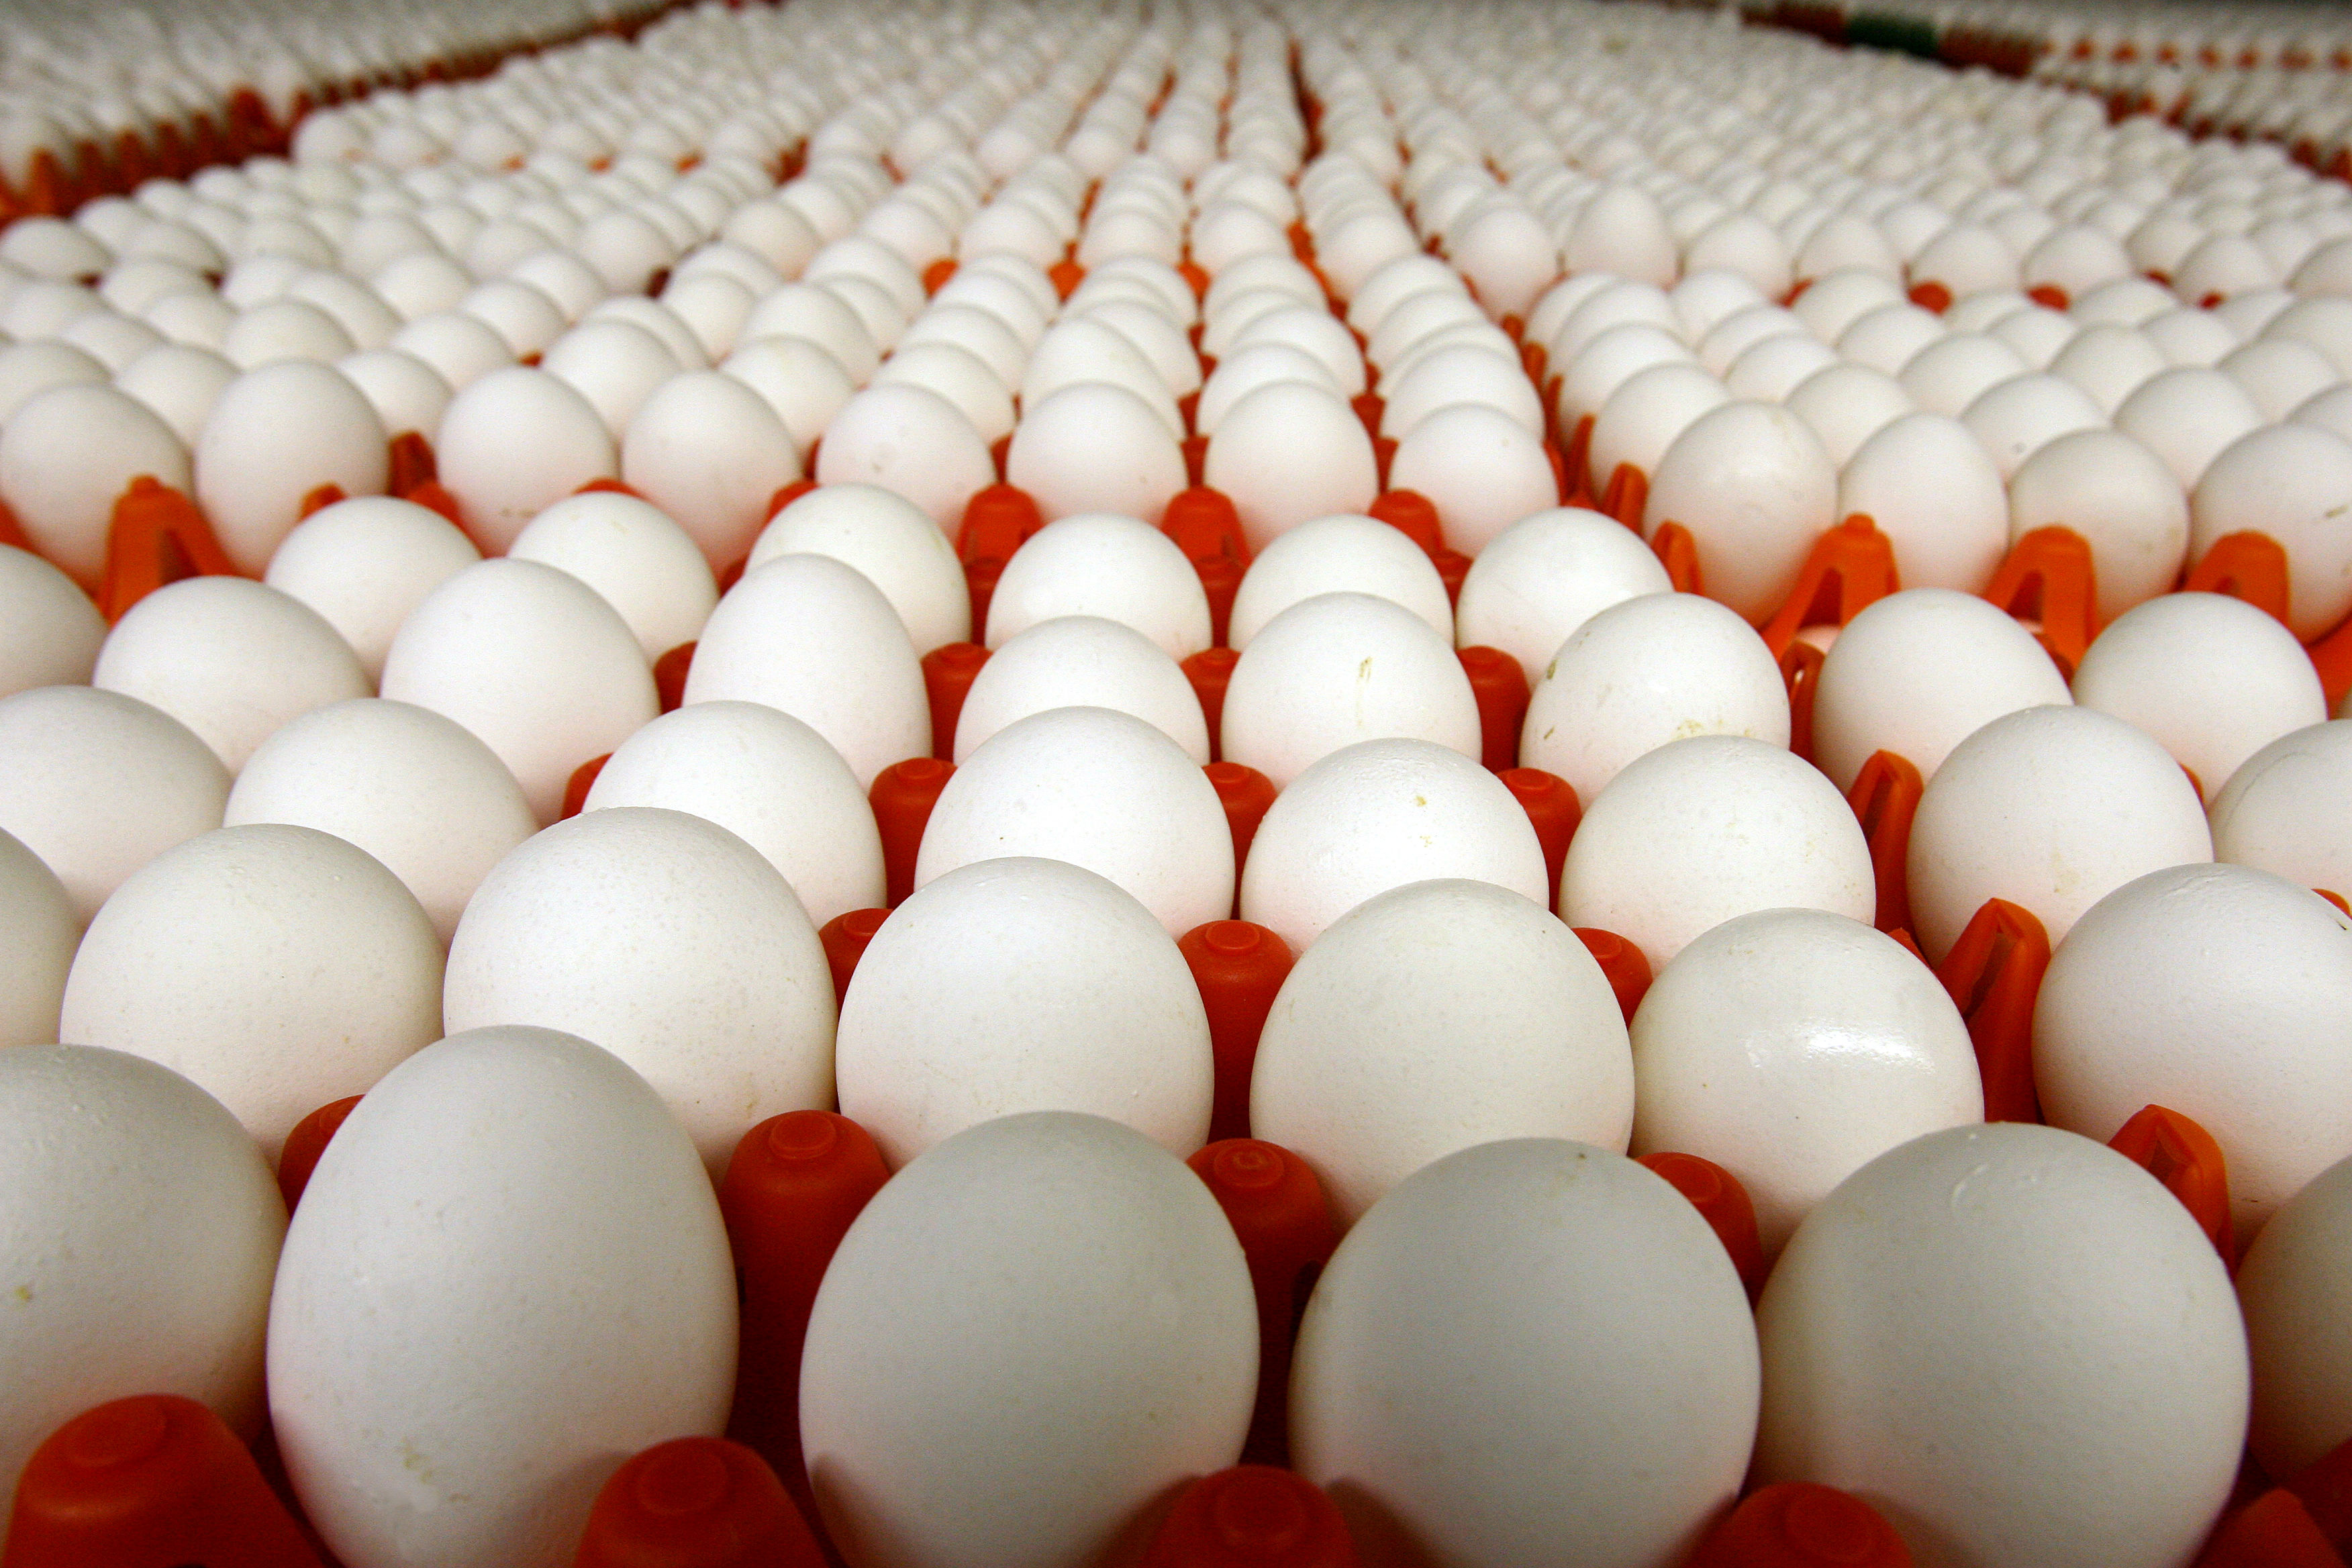 آمادگی صادرات تخم مرغ به روسیه را داریم / قیمت تخم مرغ واقعا پایین هست